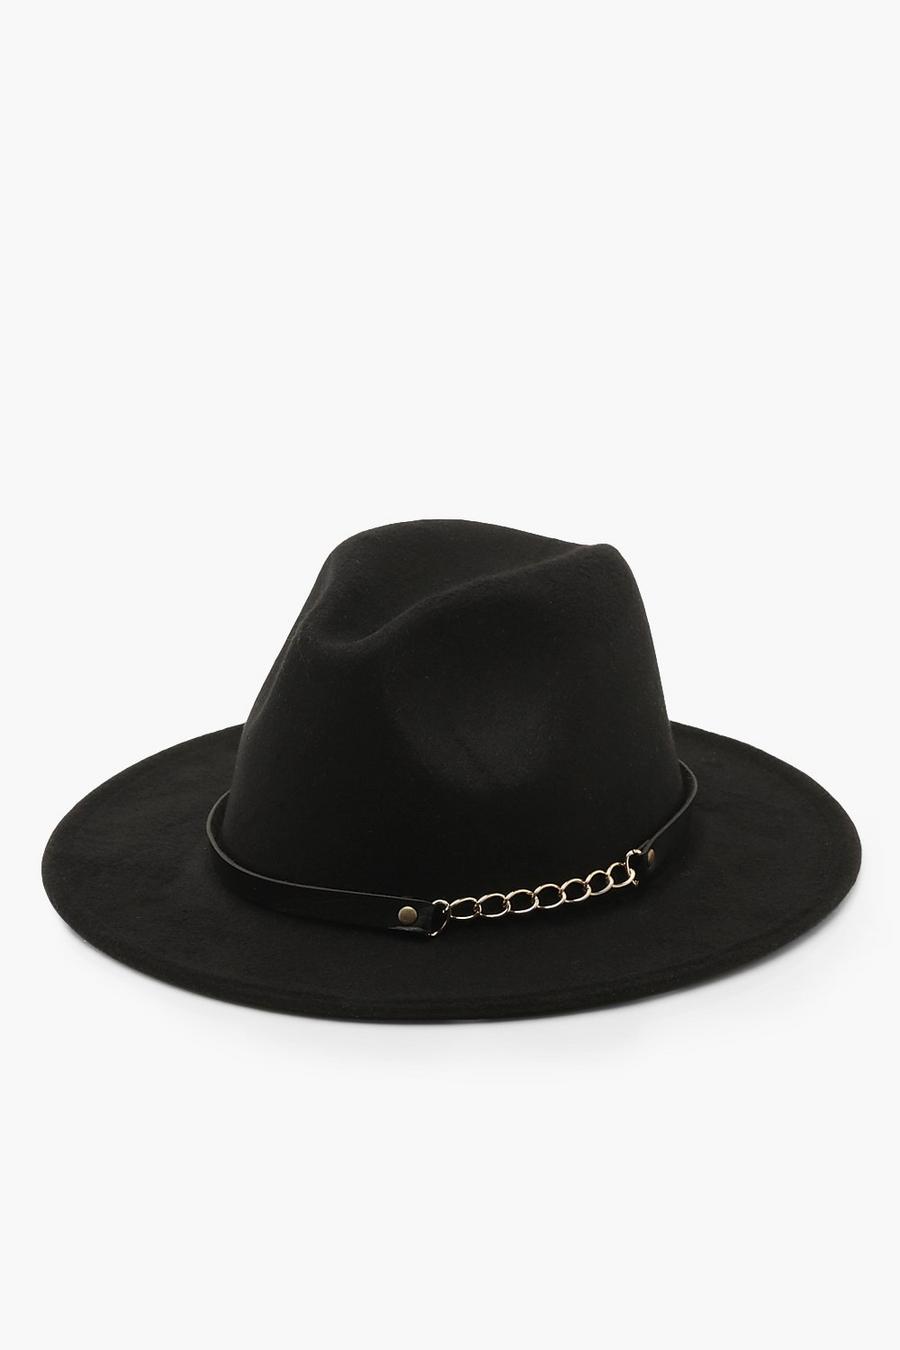 שחור nero כובע פדורה עם שרשרת